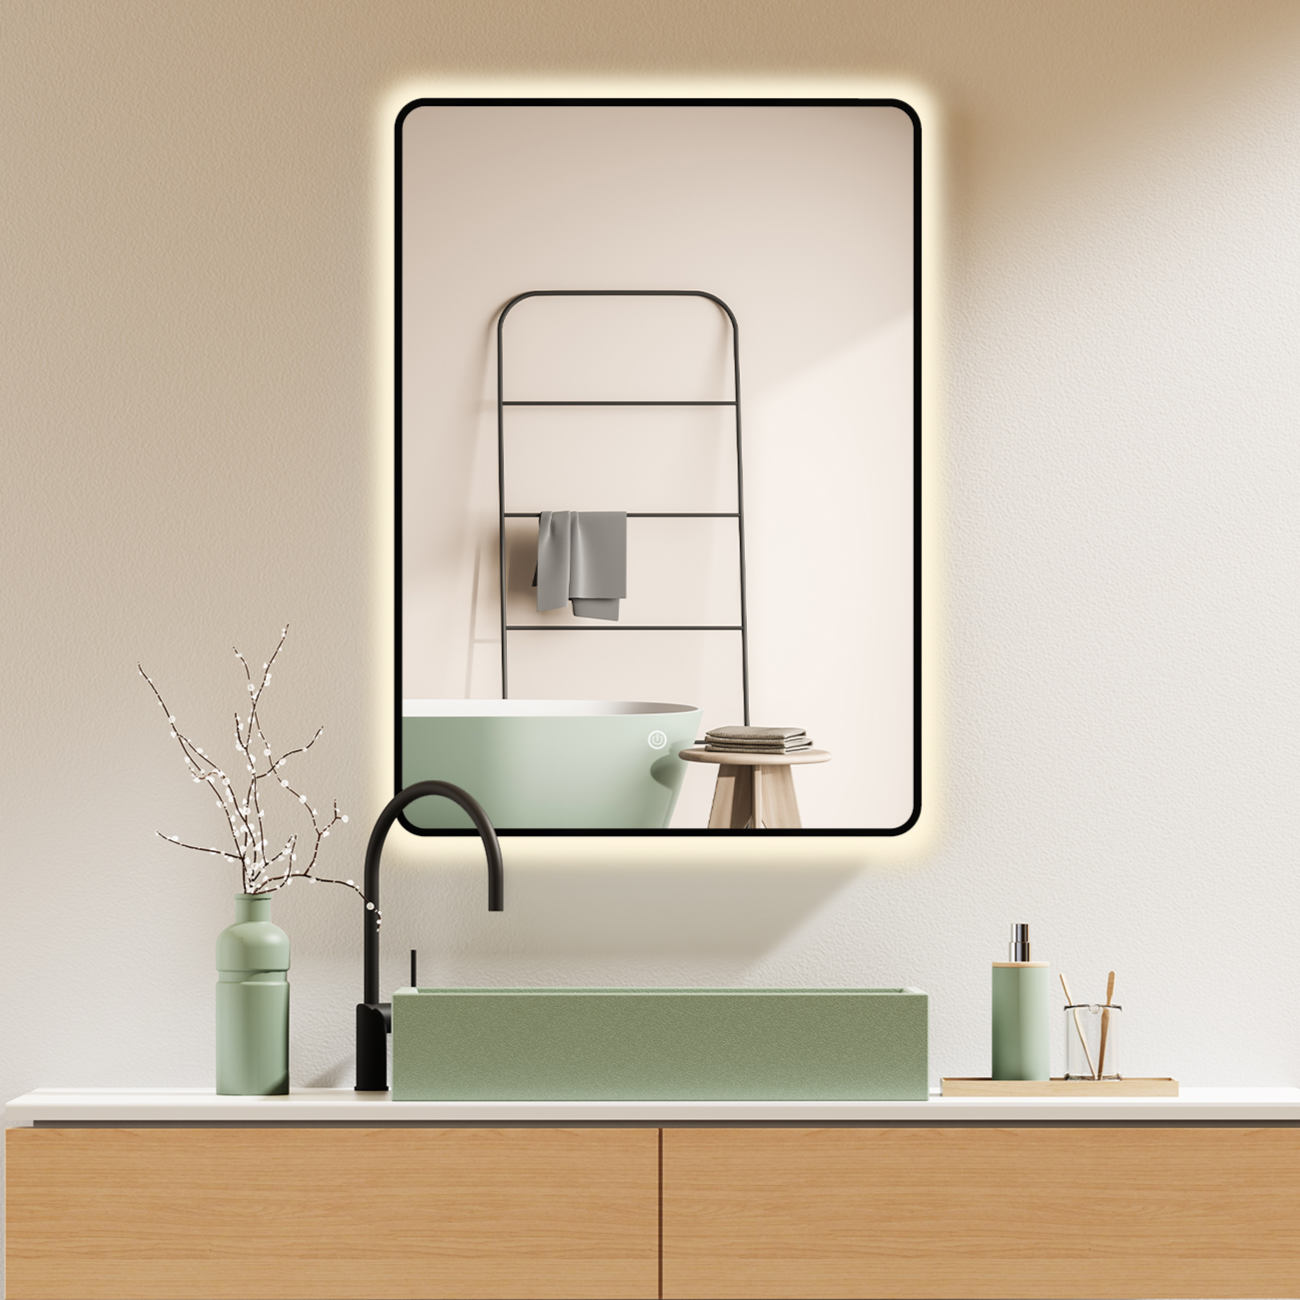 LED Badspiegel, Design Wandspiegel mit Beleuchtung, Schwarzer Metall Rahmen